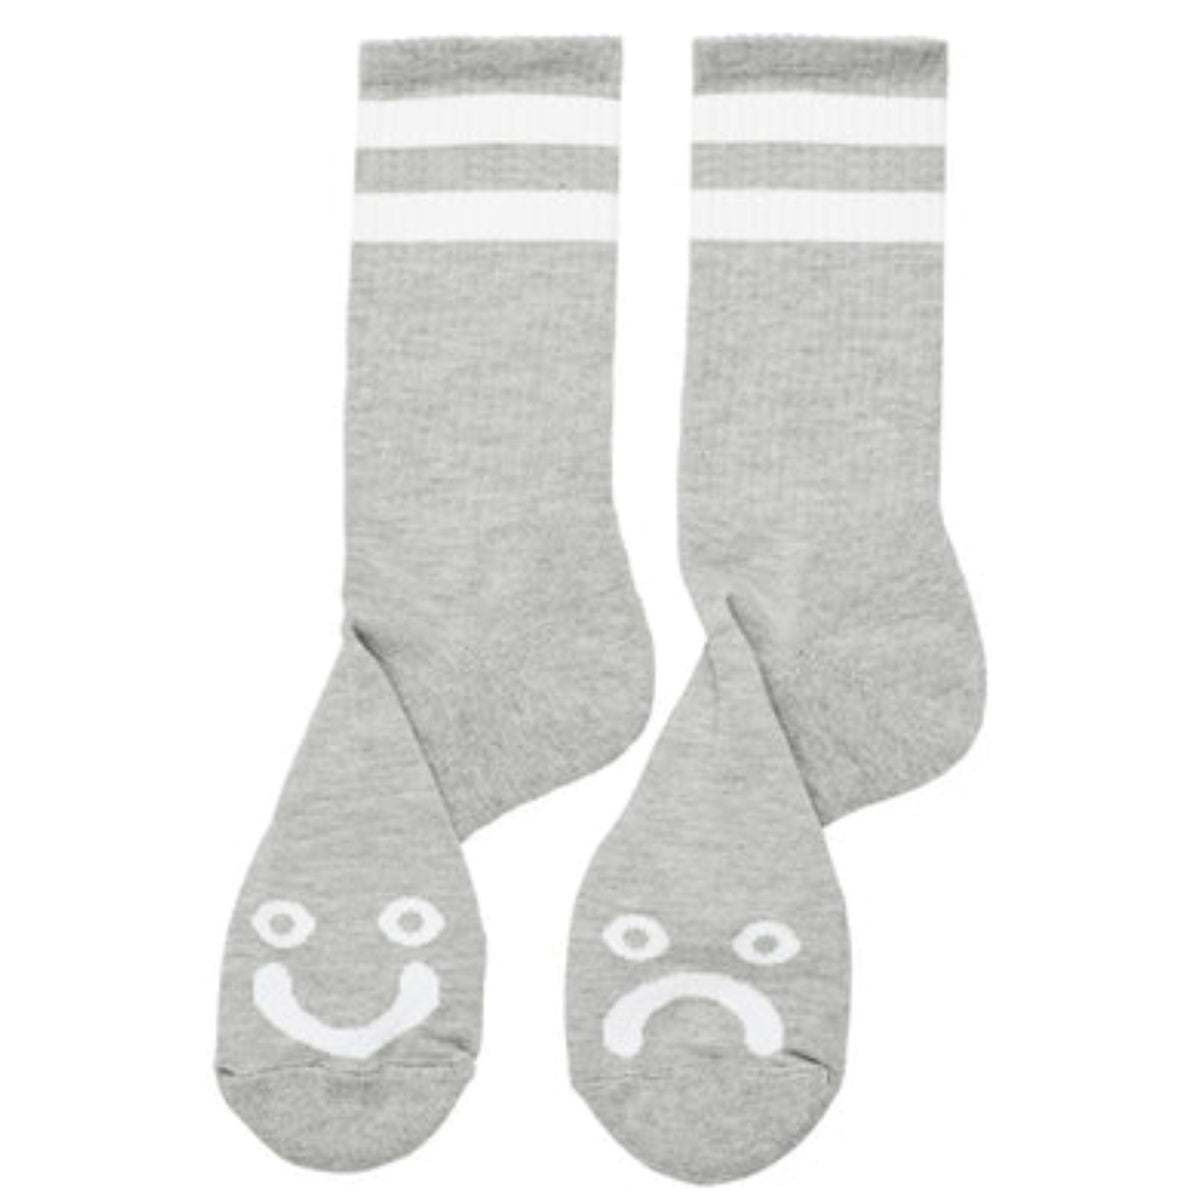 Polar - Happy Sad Socks - Heather Grey - Size 39-42